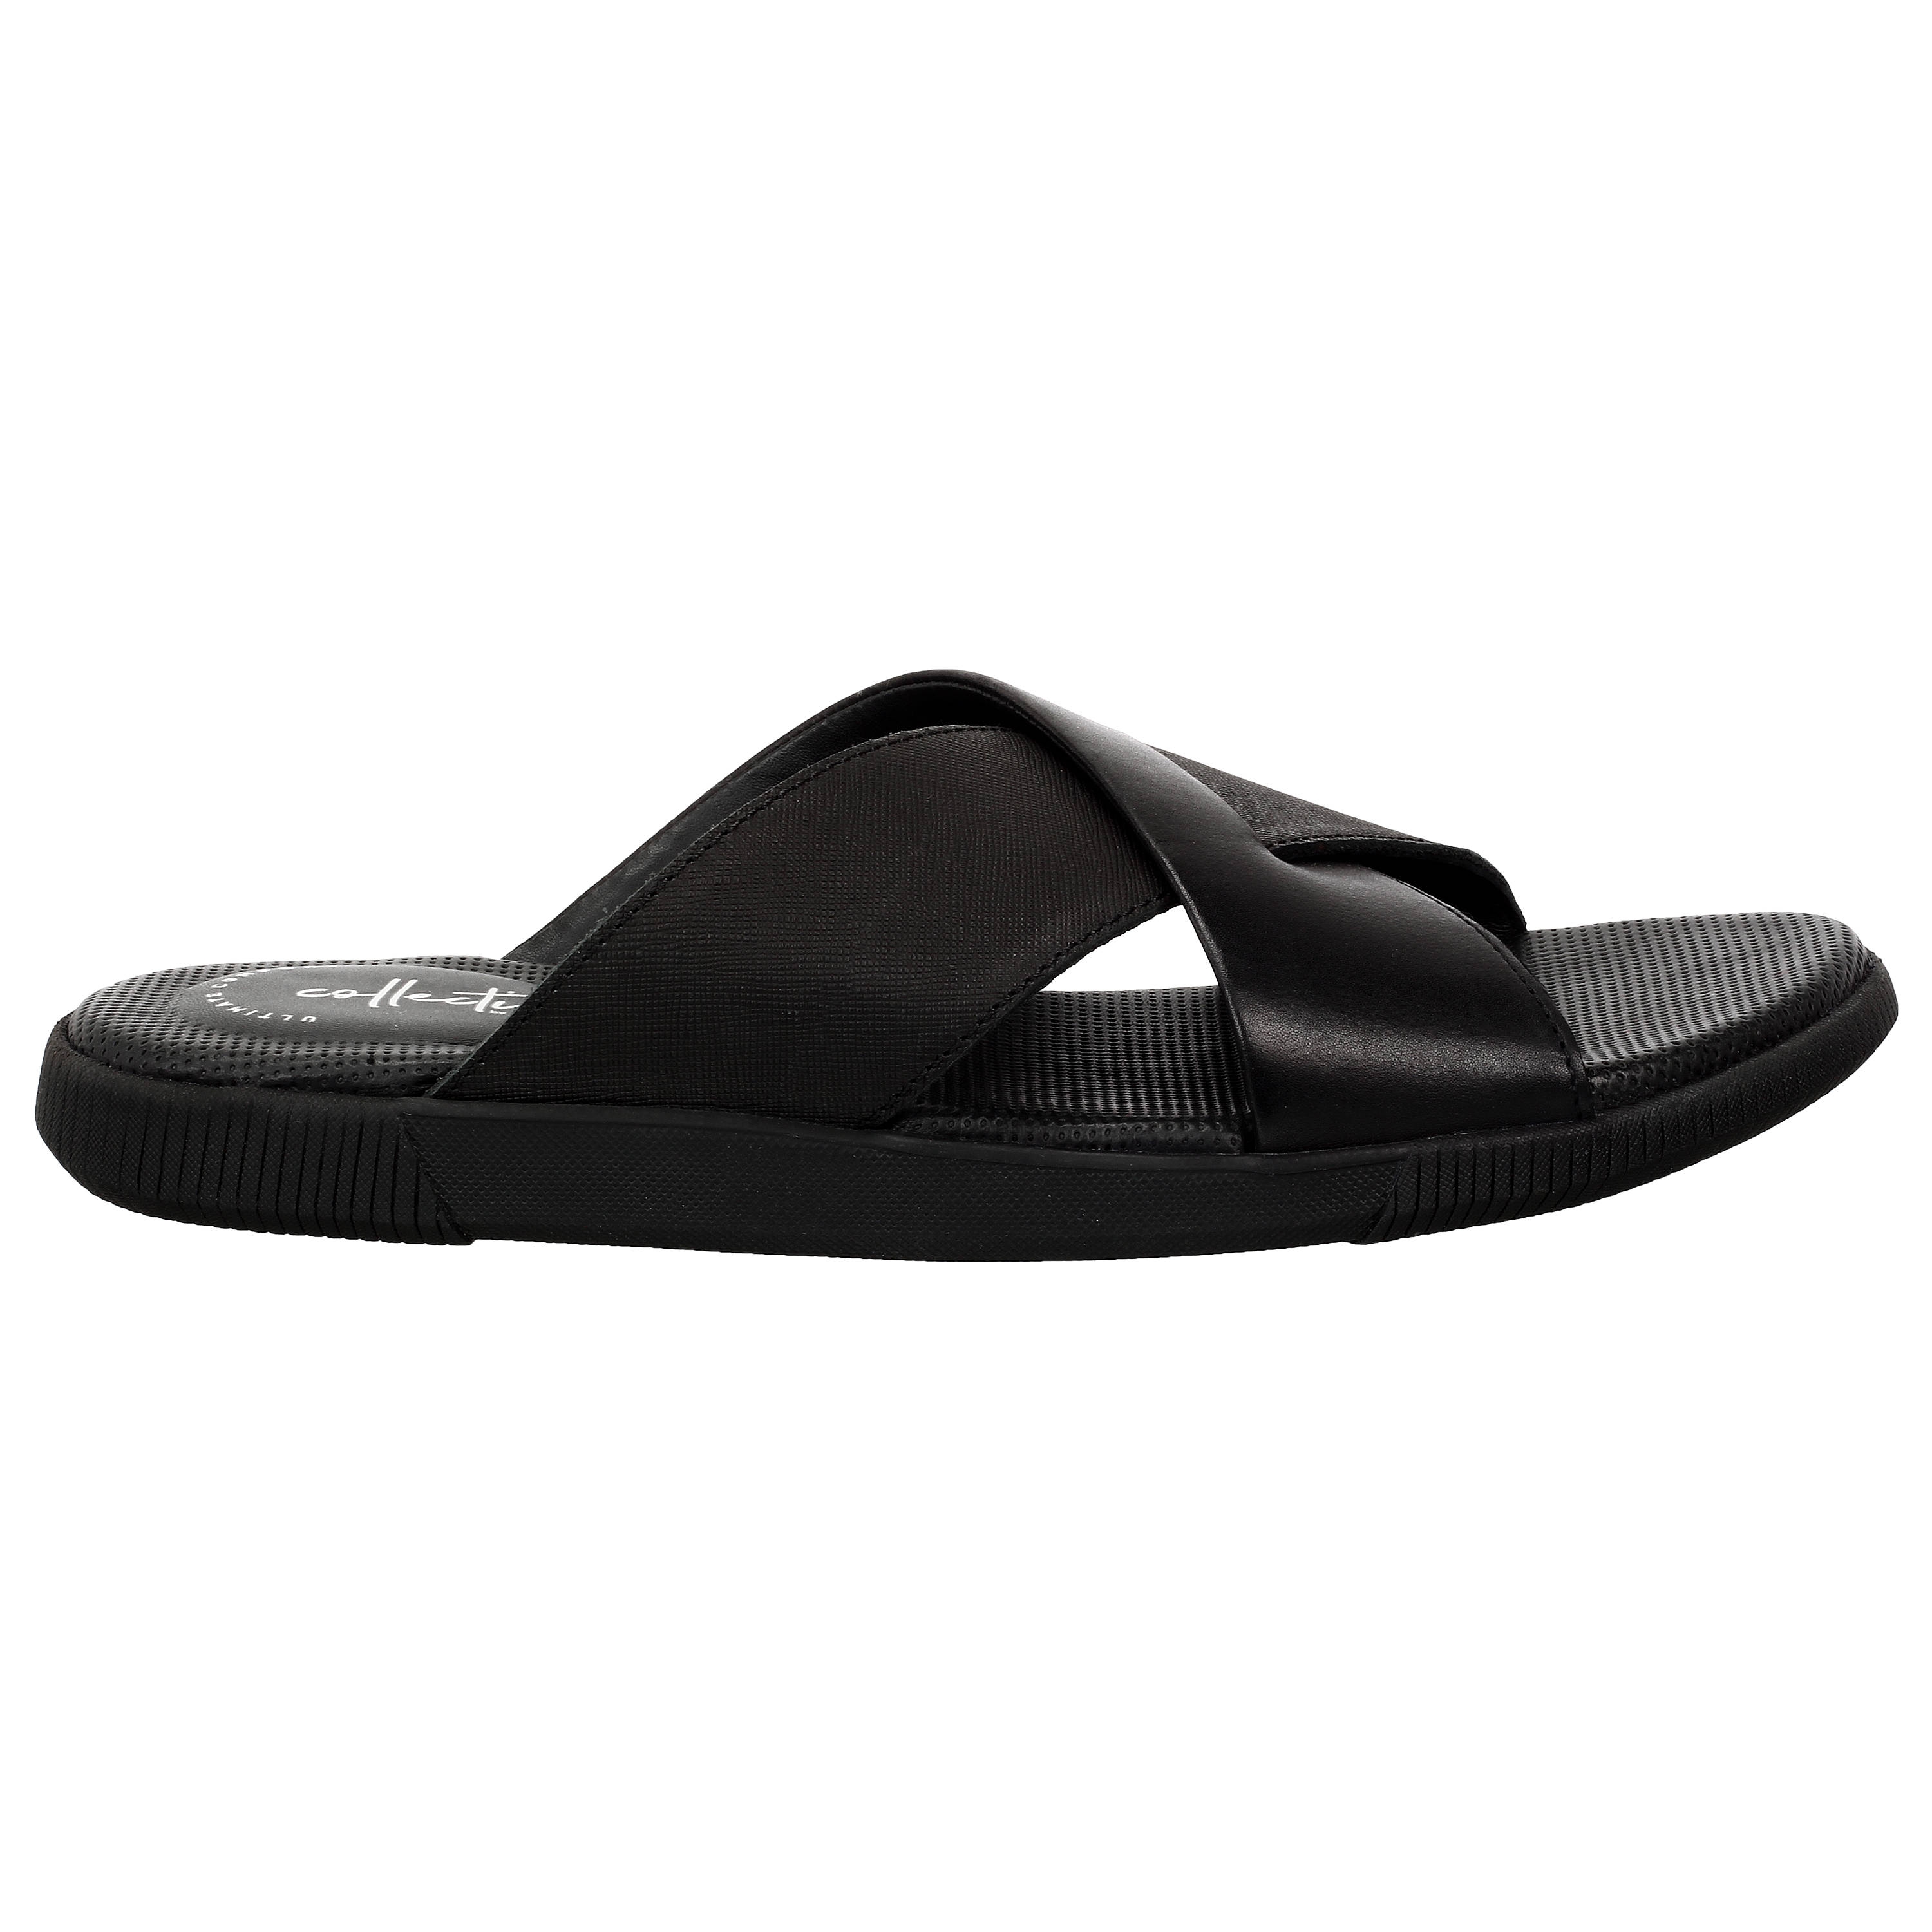 Clarks | Vine Ash Black Combi Sandals